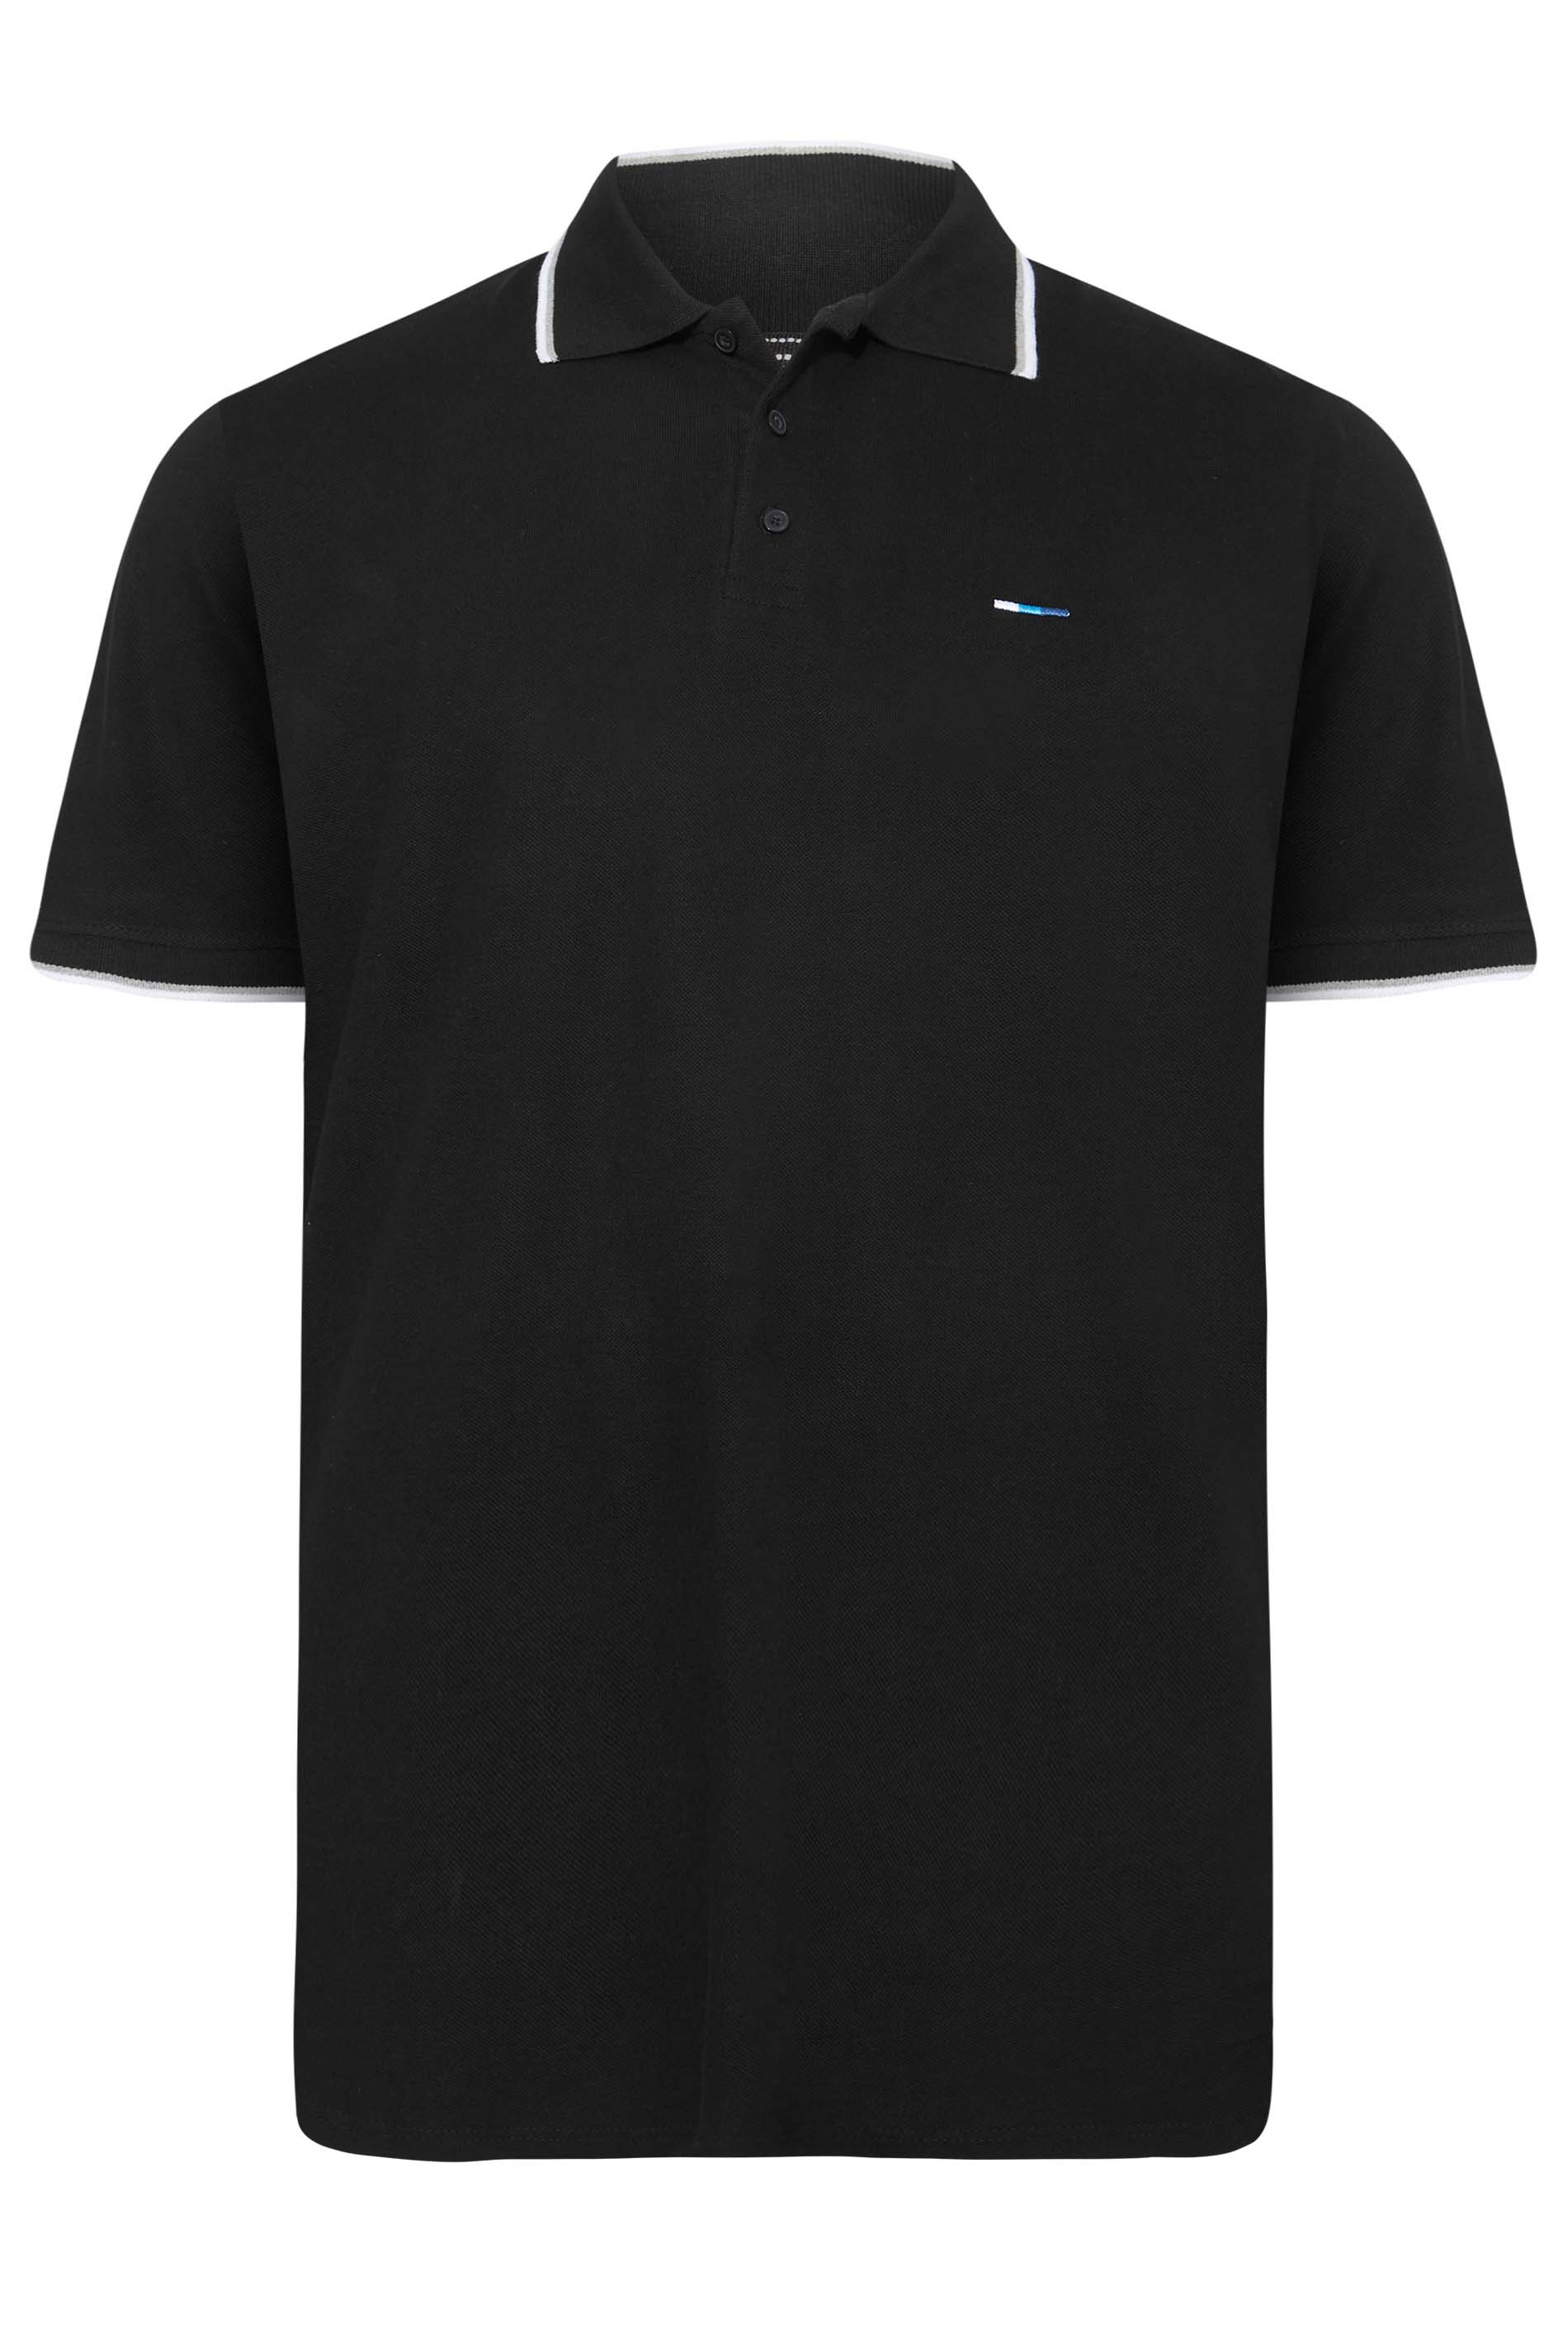 BadRhino Black Essential Tipped Polo Shirt | BadRhino 3